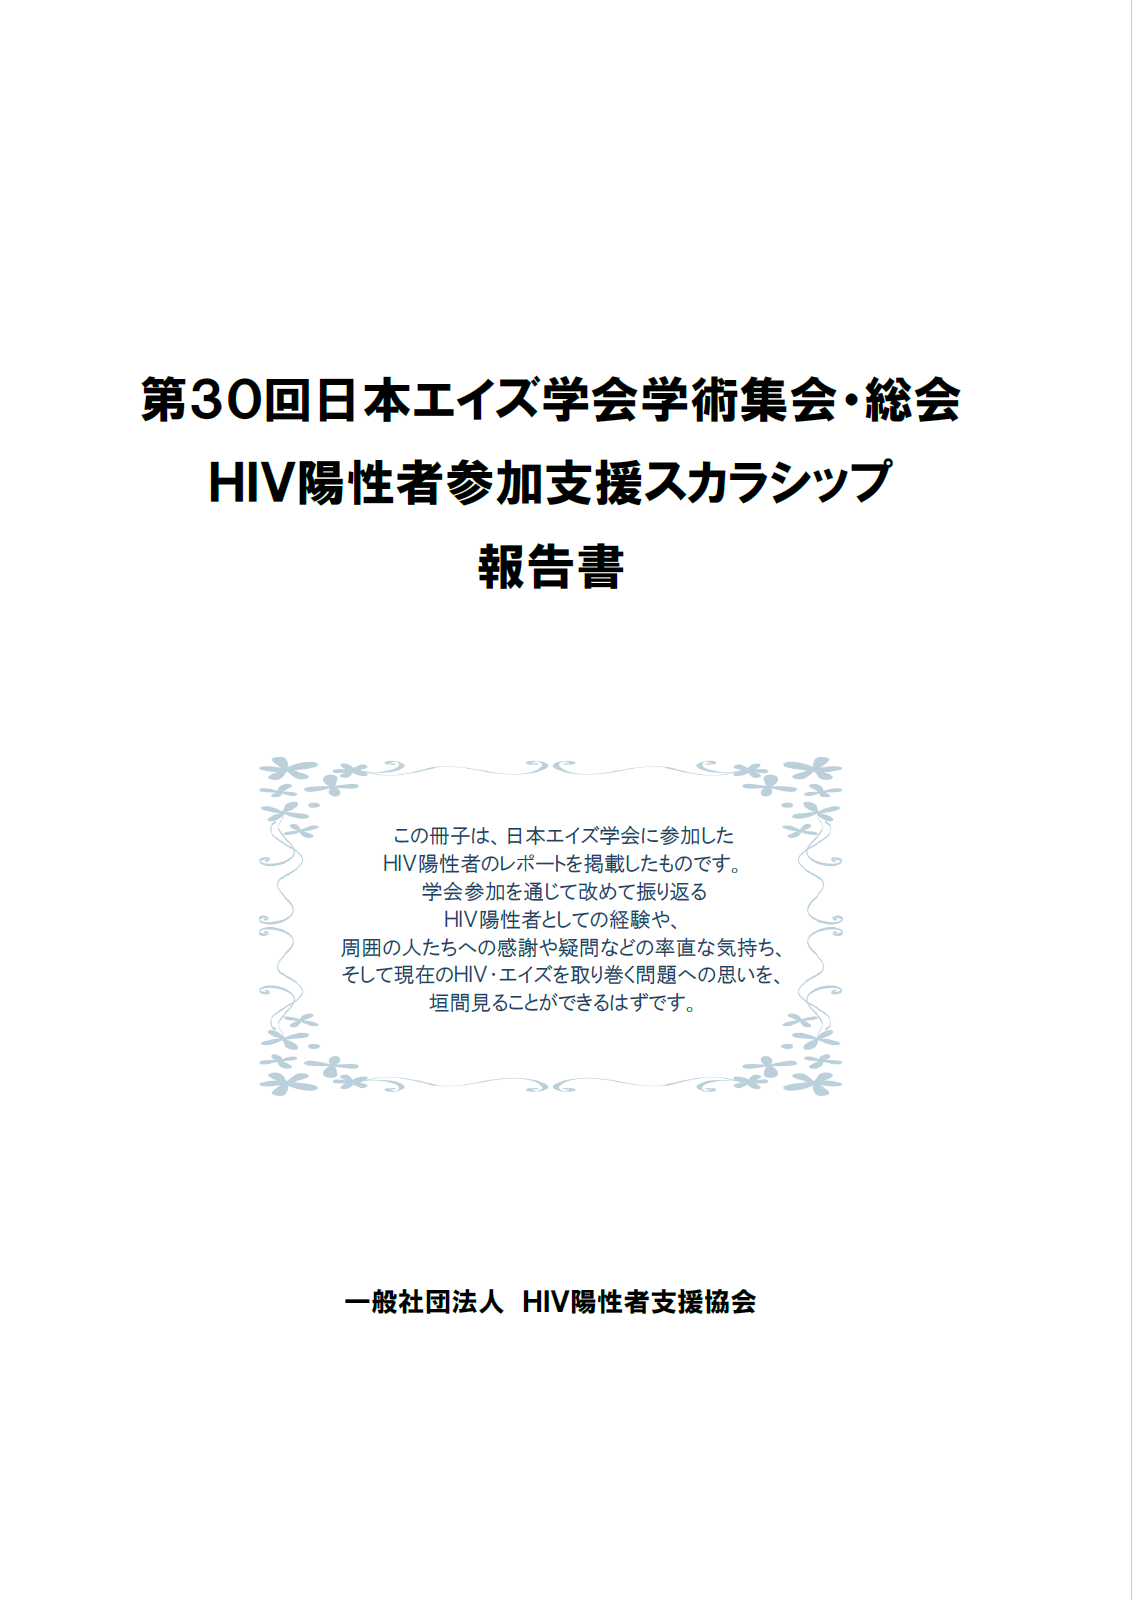 第30回日本エイズ学会総会・学術集会 HIV陽性者参加支援スカラシップ 報告書